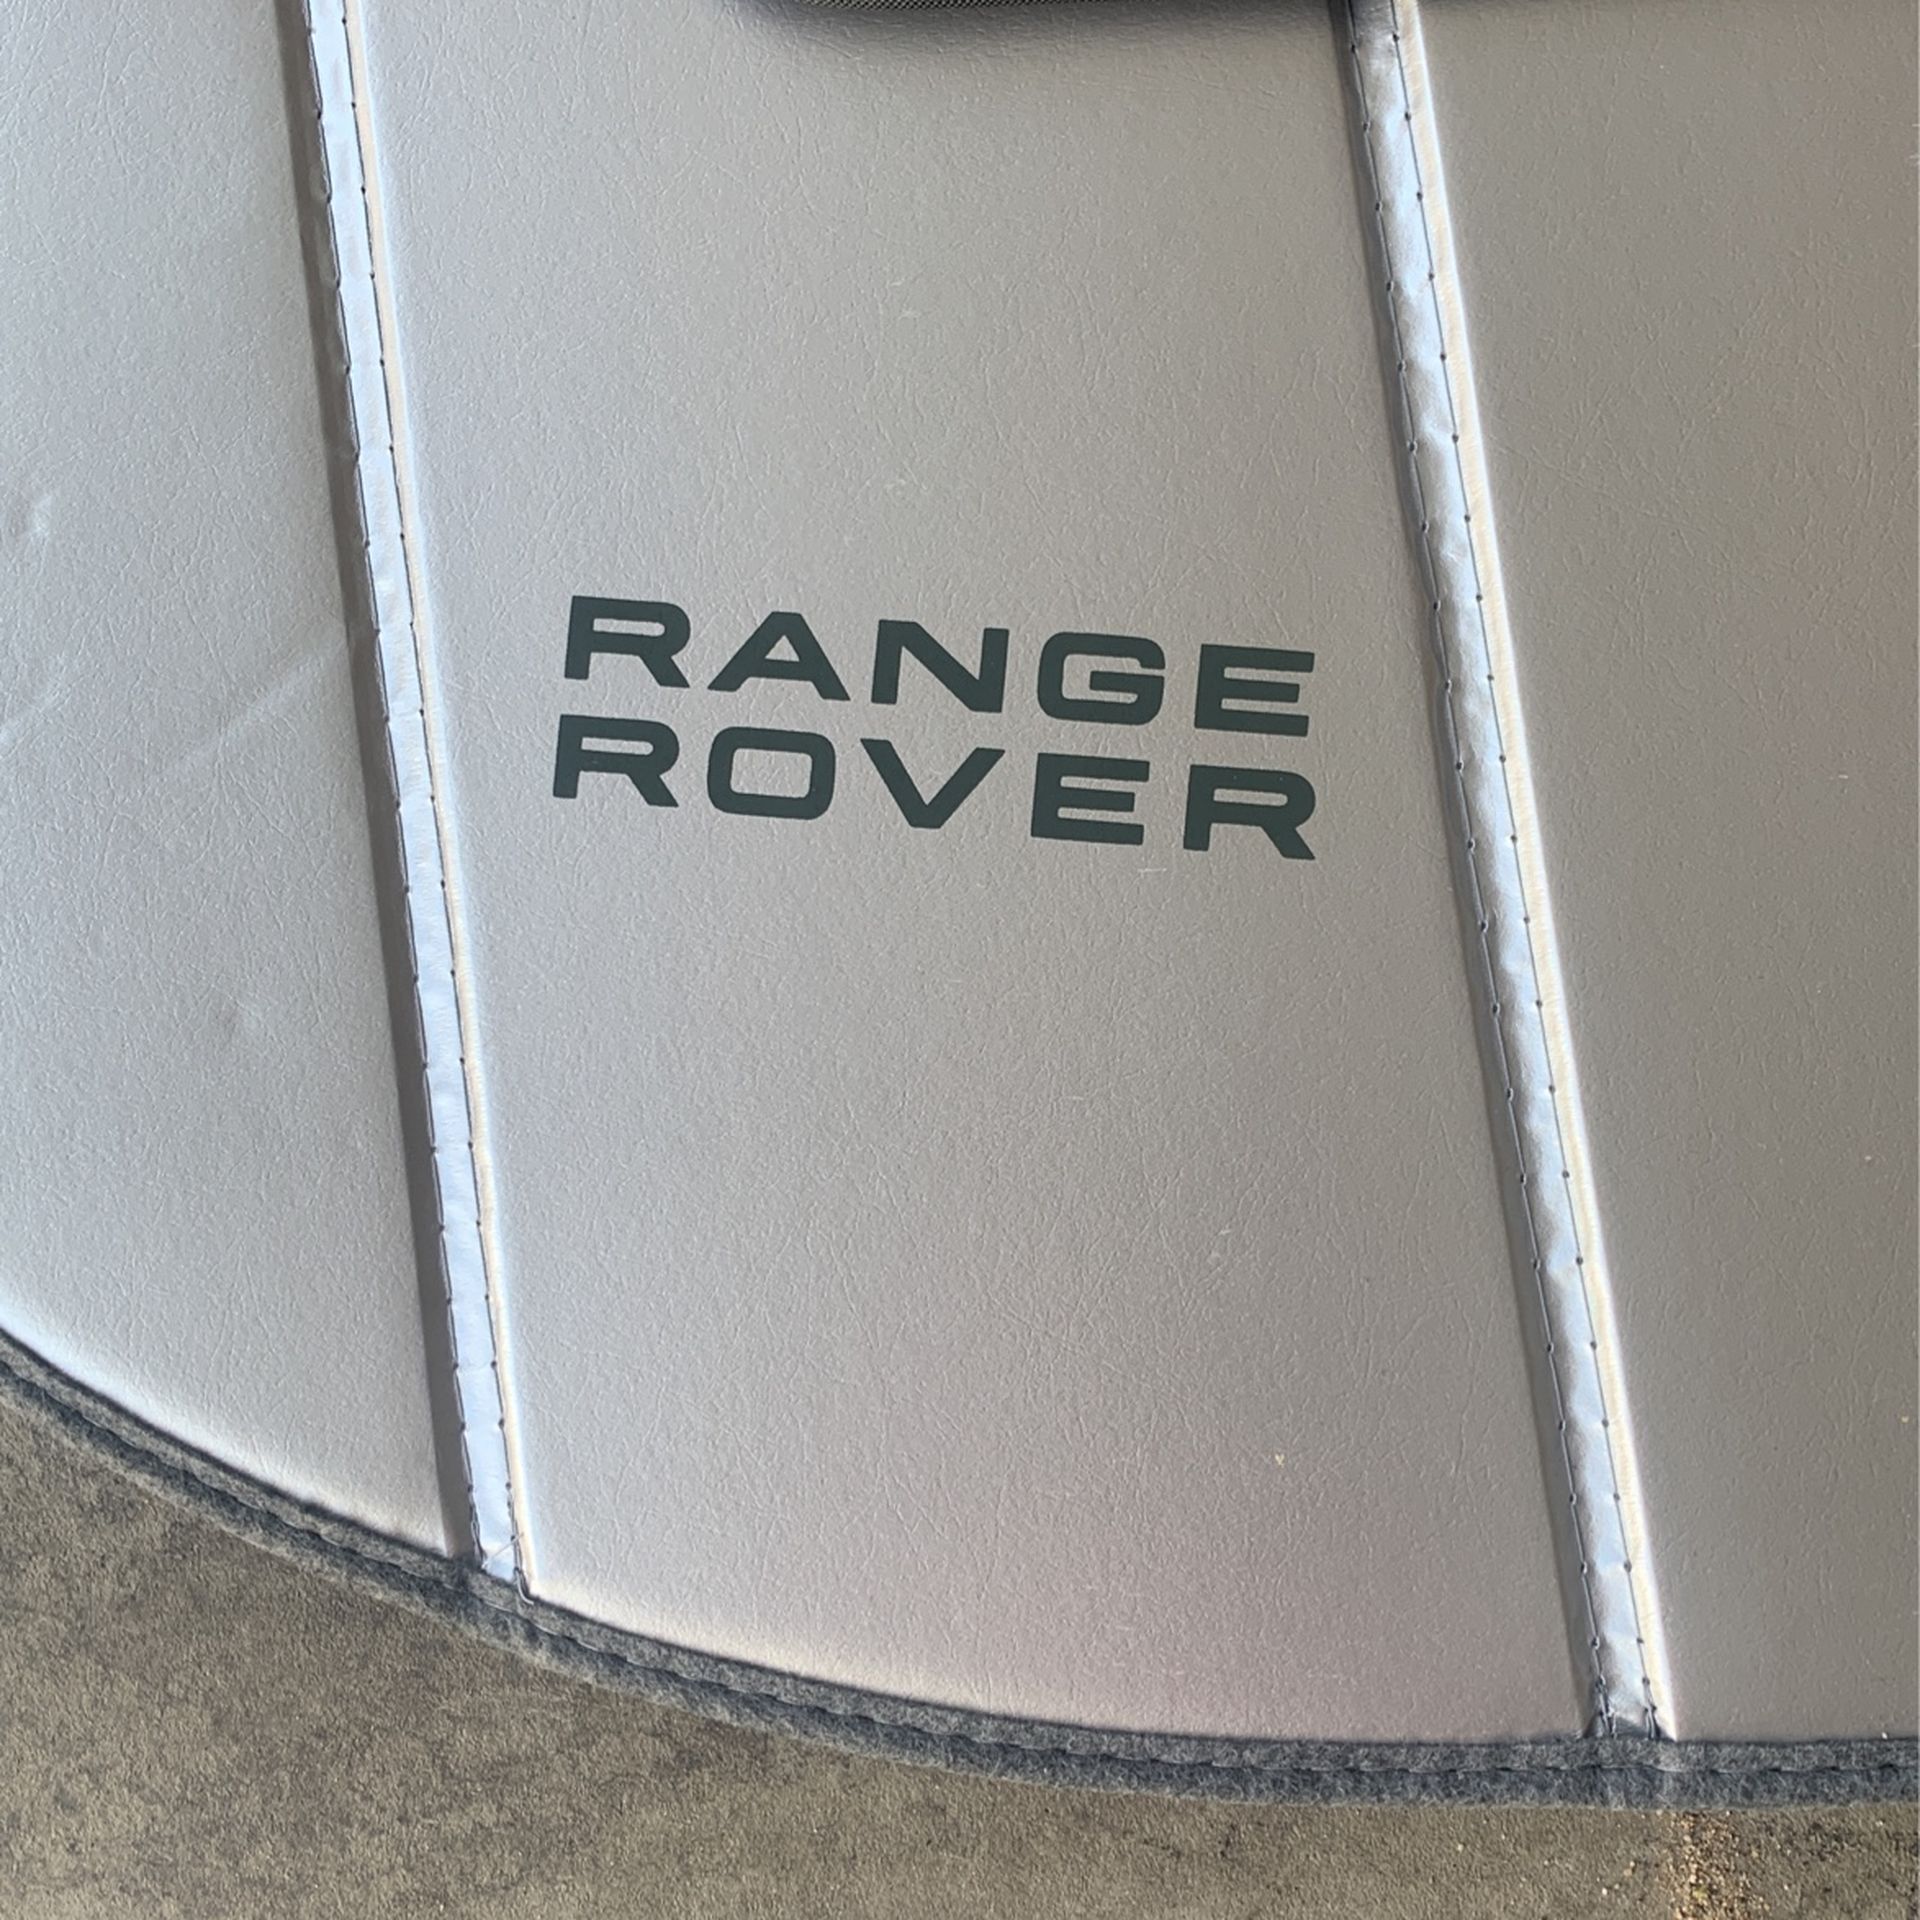 Range rover sound blocker